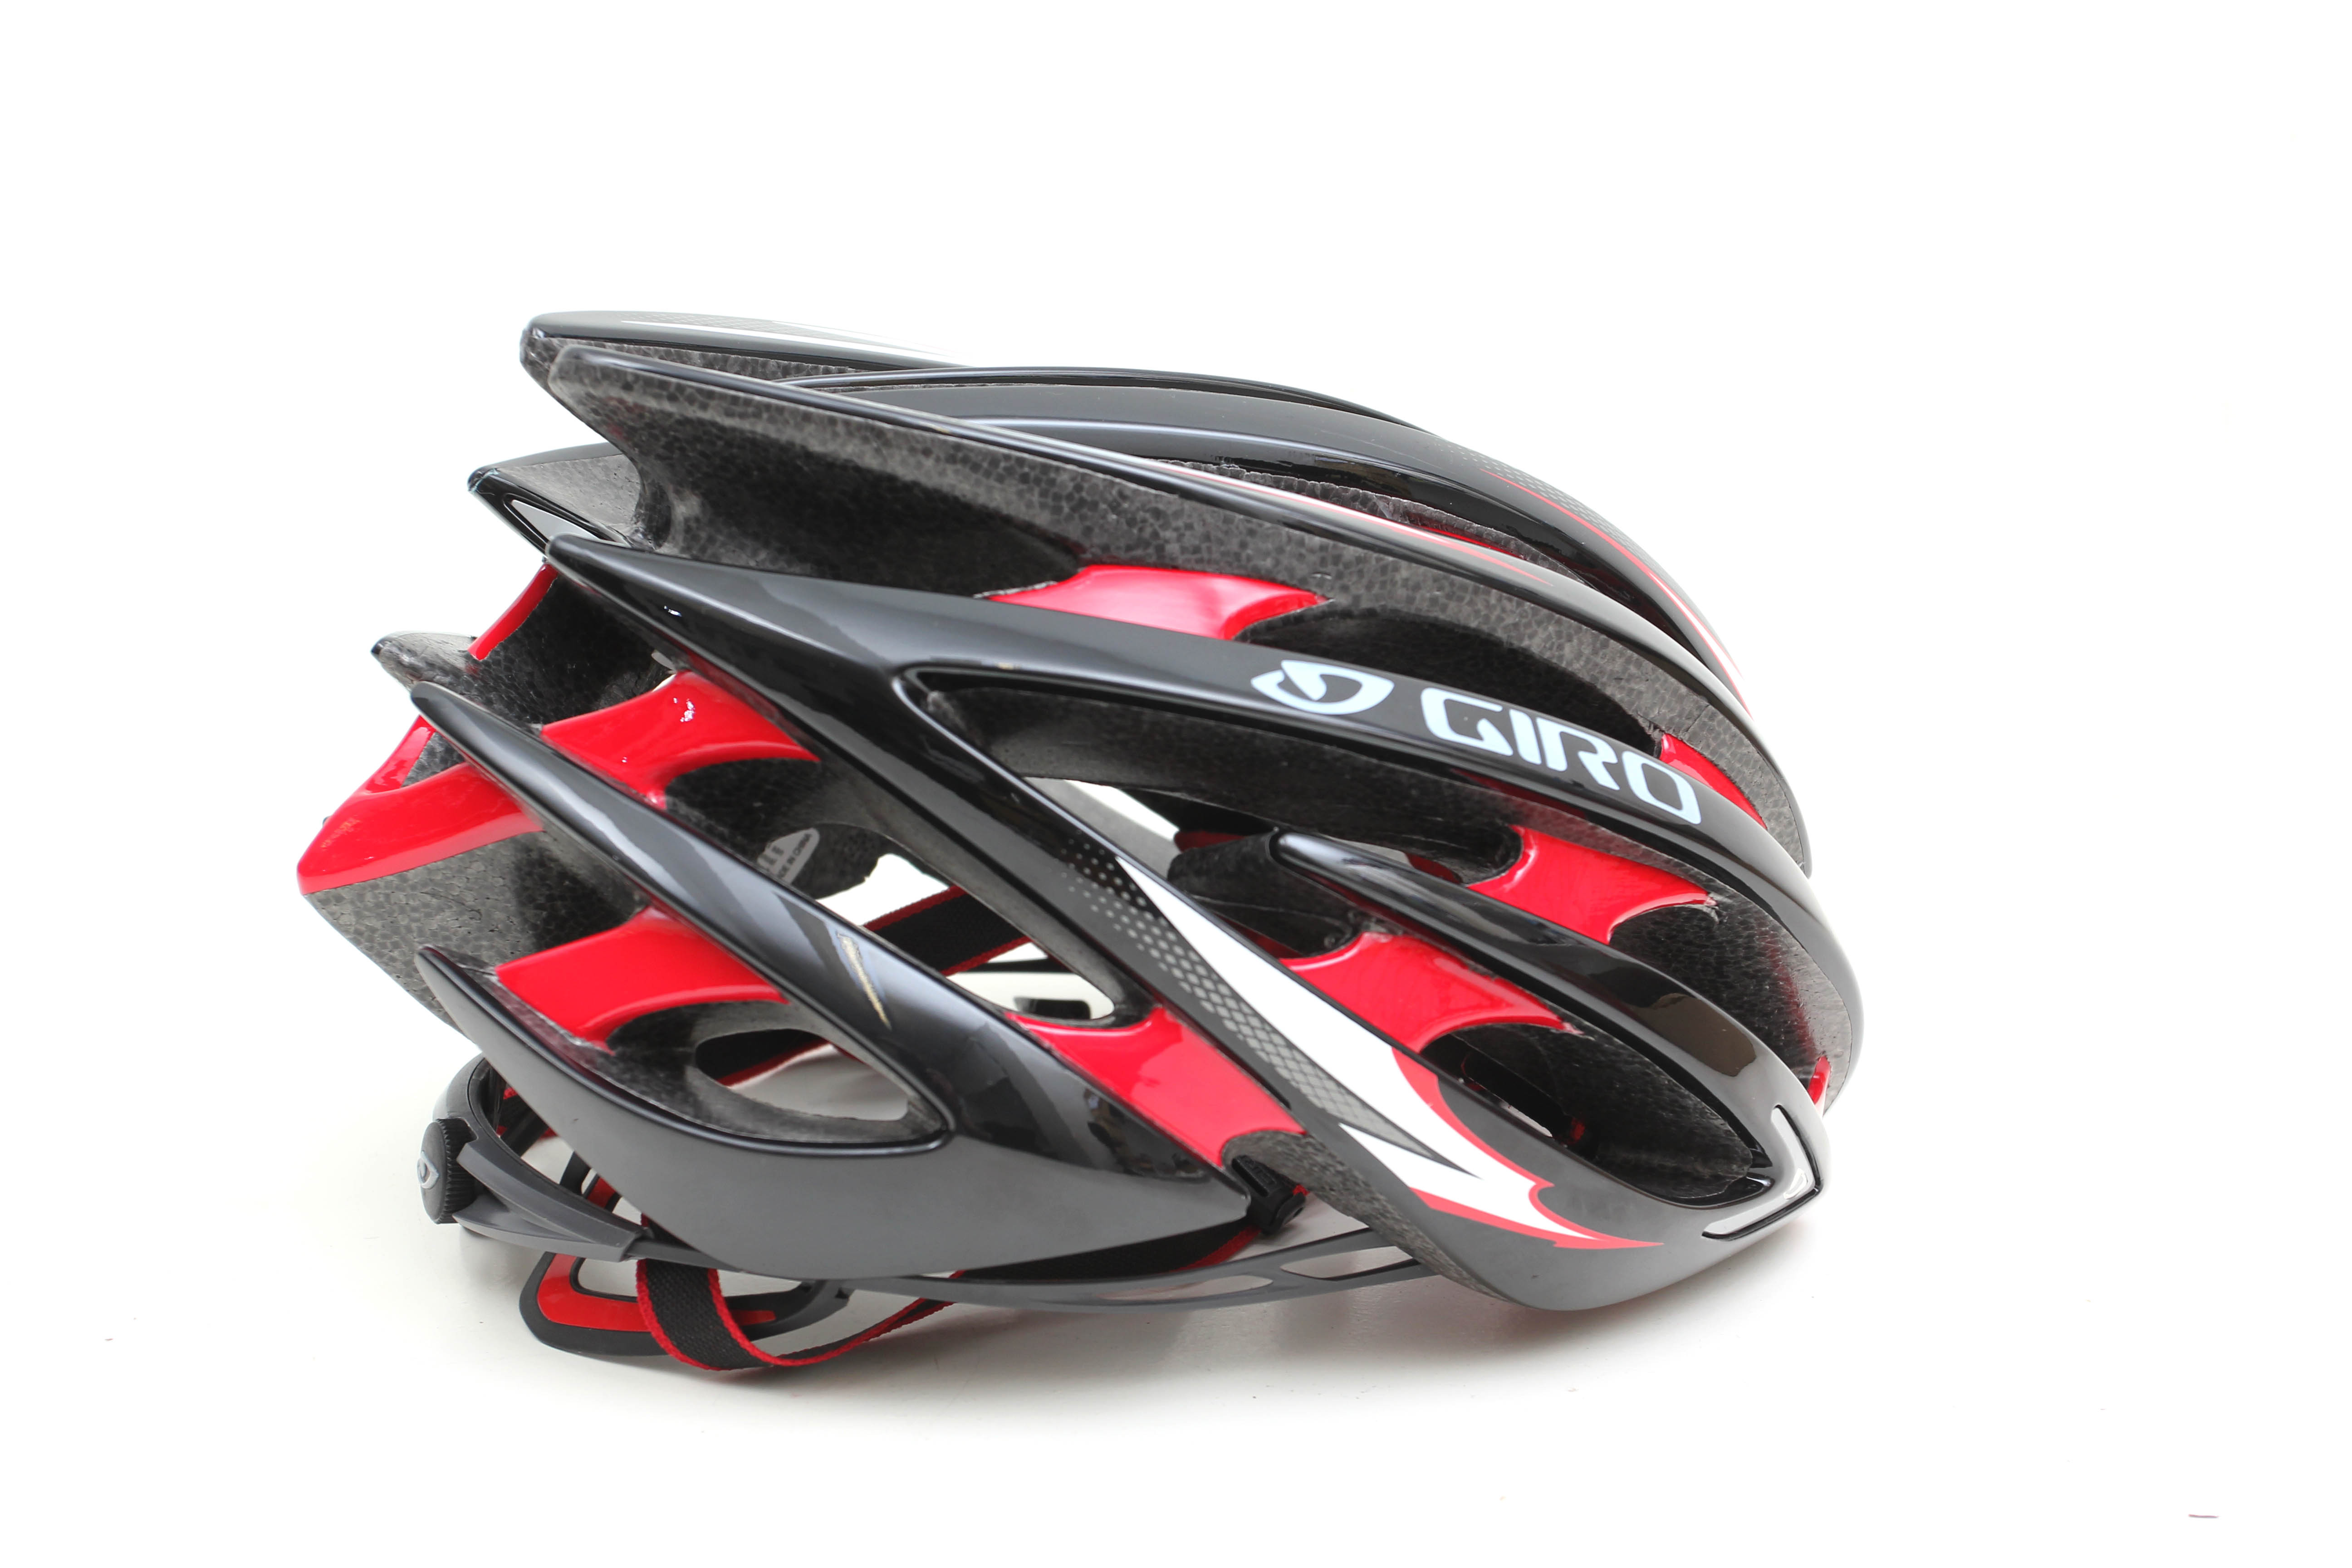 Gevoelig voor Matig Penetratie Review: Giro Aeon helmet | road.cc